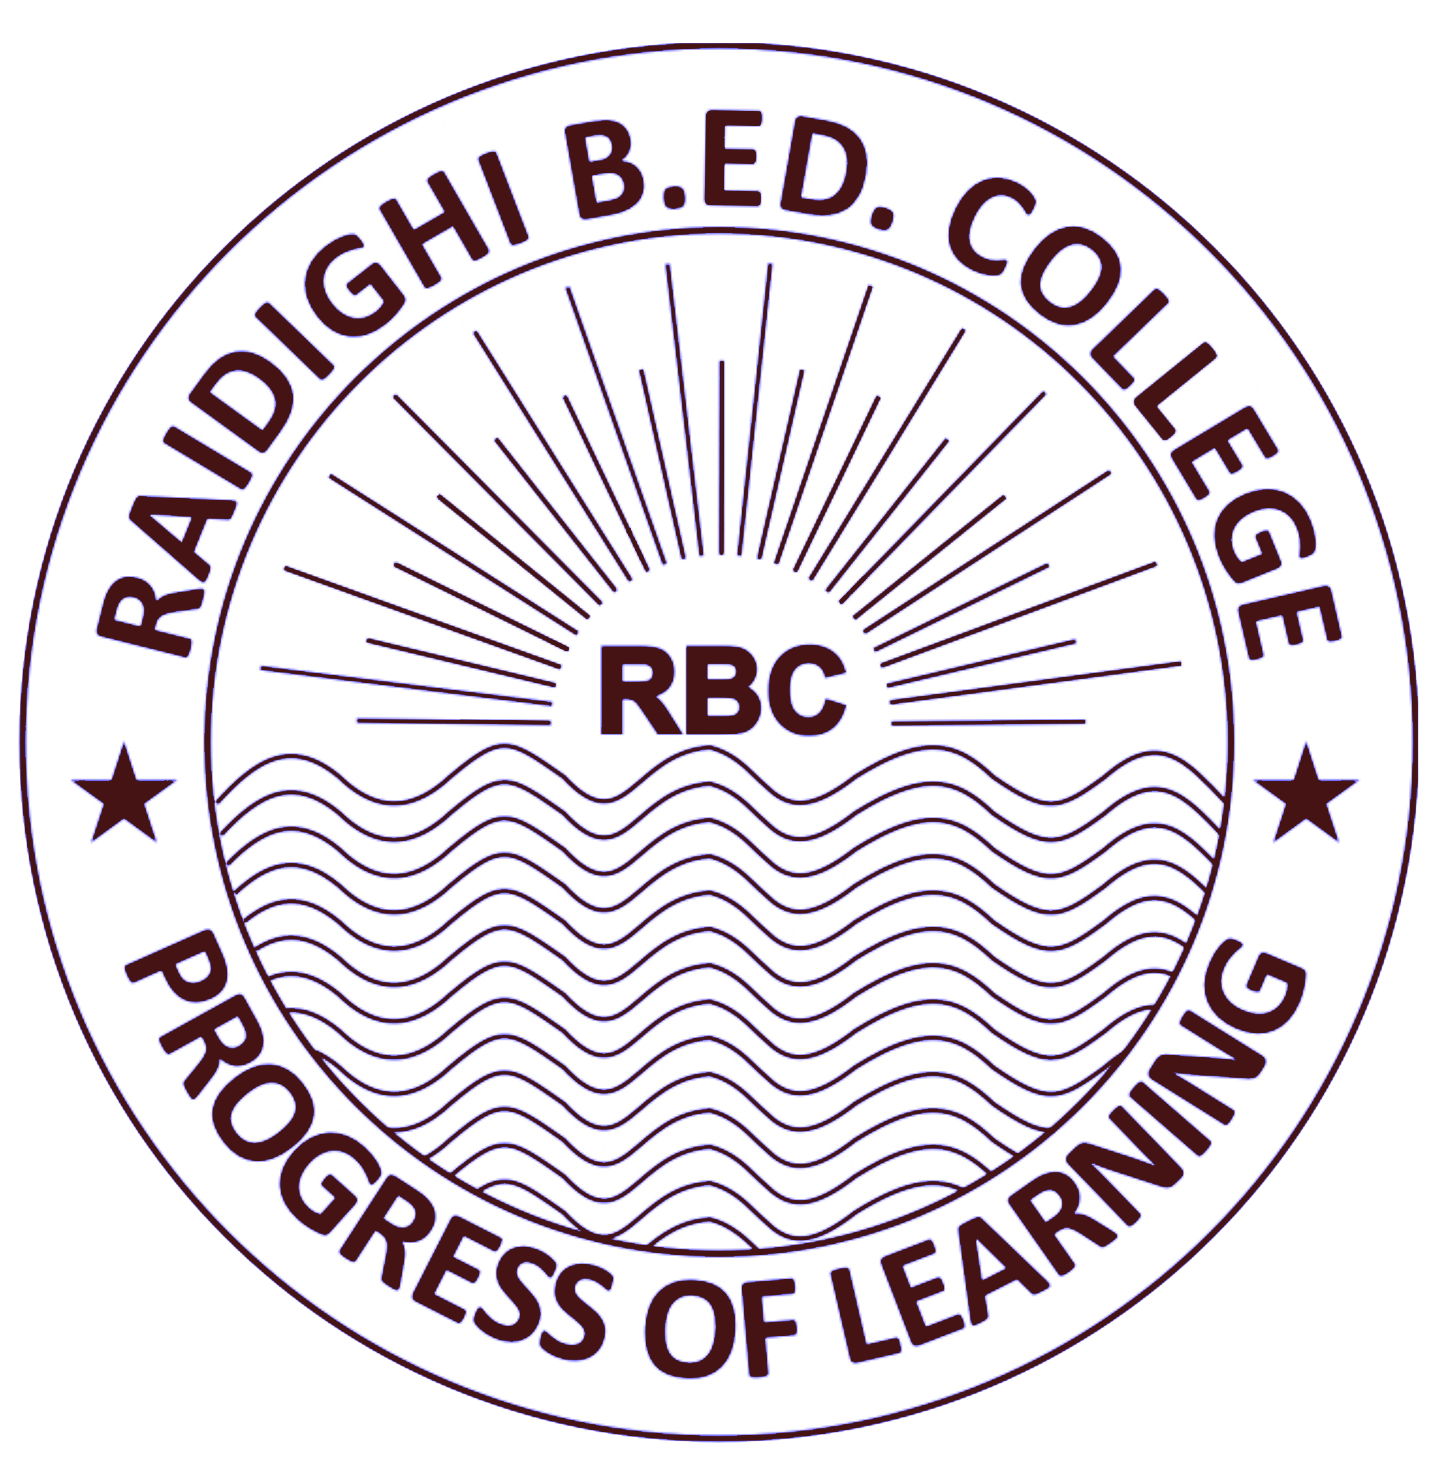 Raidighi B.Ed. College, 24 Parganas (s)